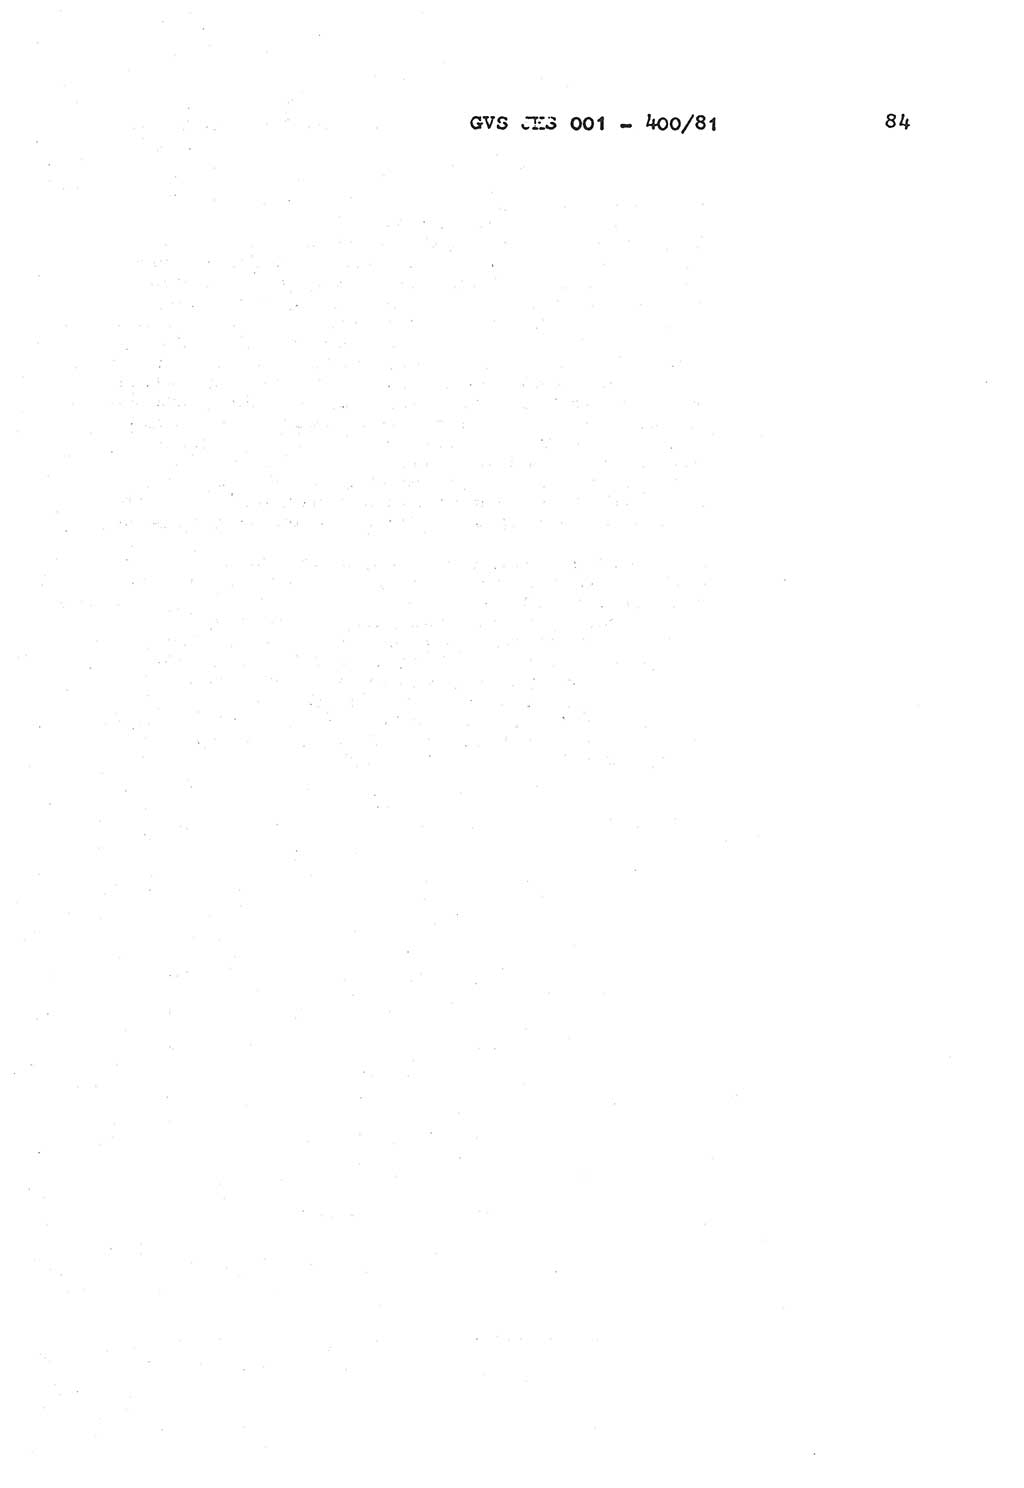 Wörterbuch der politisch-operativen Arbeit, Ministerium für Staatssicherheit (MfS) [Deutsche Demokratische Republik (DDR)], Juristische Hochschule (JHS), Geheime Verschlußsache (GVS) o001-400/81, Potsdam 1985, Blatt 84 (Wb. pol.-op. Arb. MfS DDR JHS GVS o001-400/81 1985, Bl. 84)